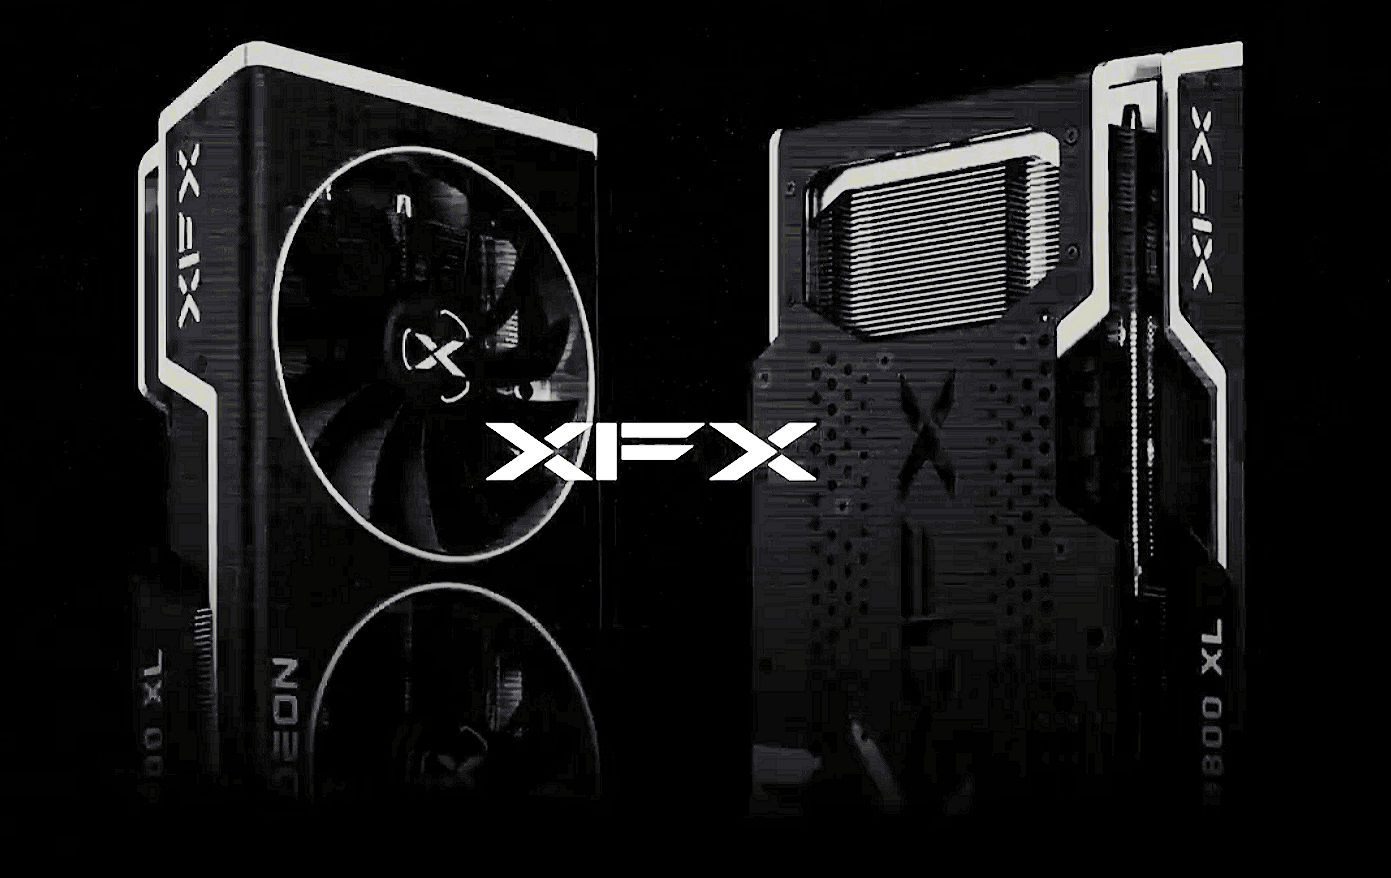 XFX Merc 319 7800 XT Black - LanOC Reviews